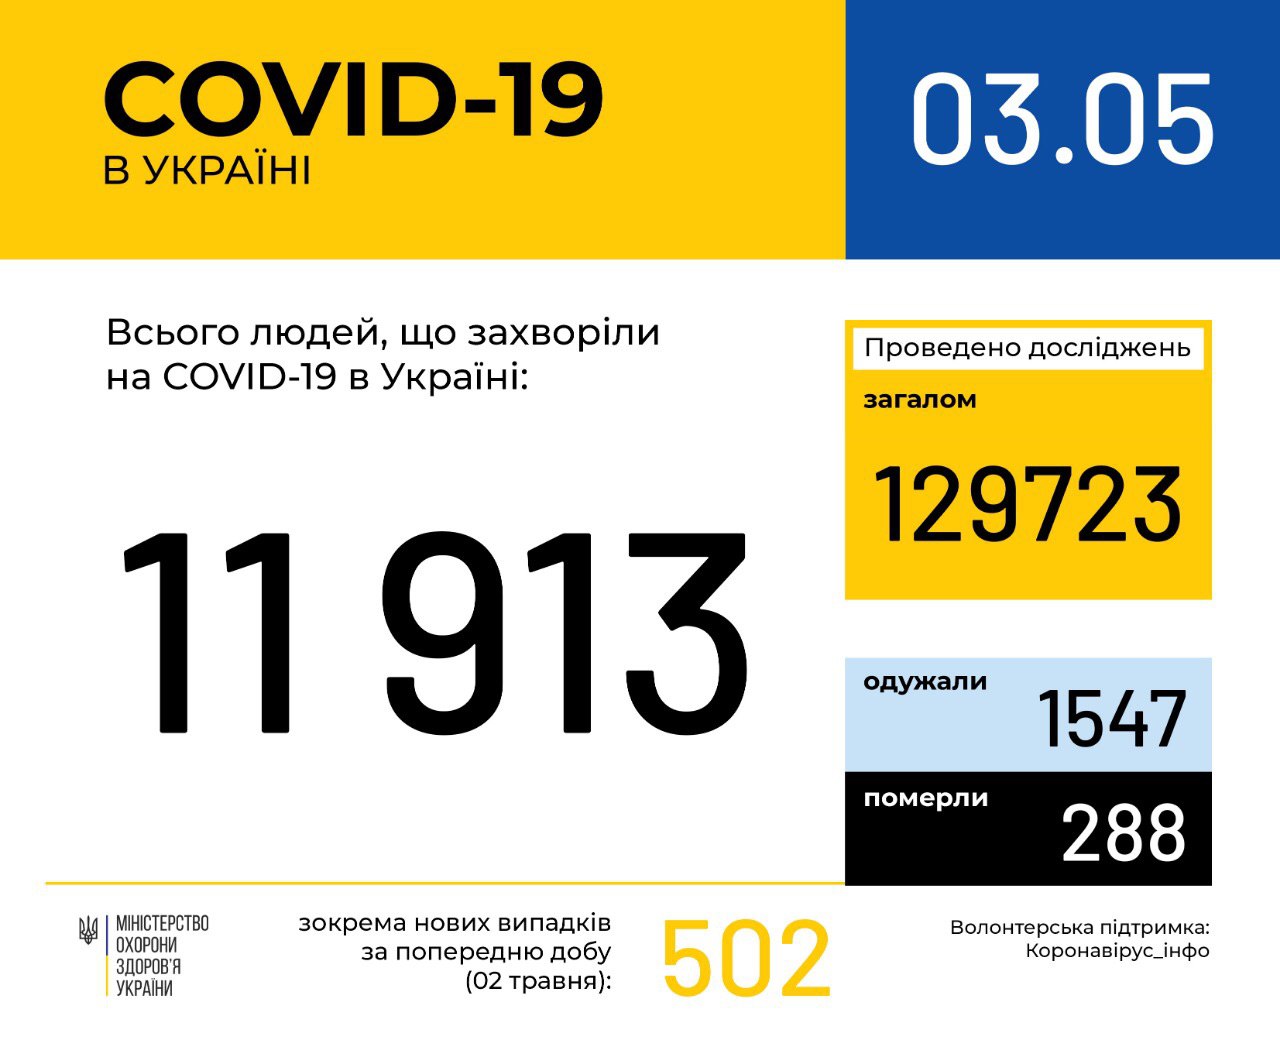 В Україні зафіксовано 11913 випадків коронавірусної хвороби COVID-19, - МОЗ